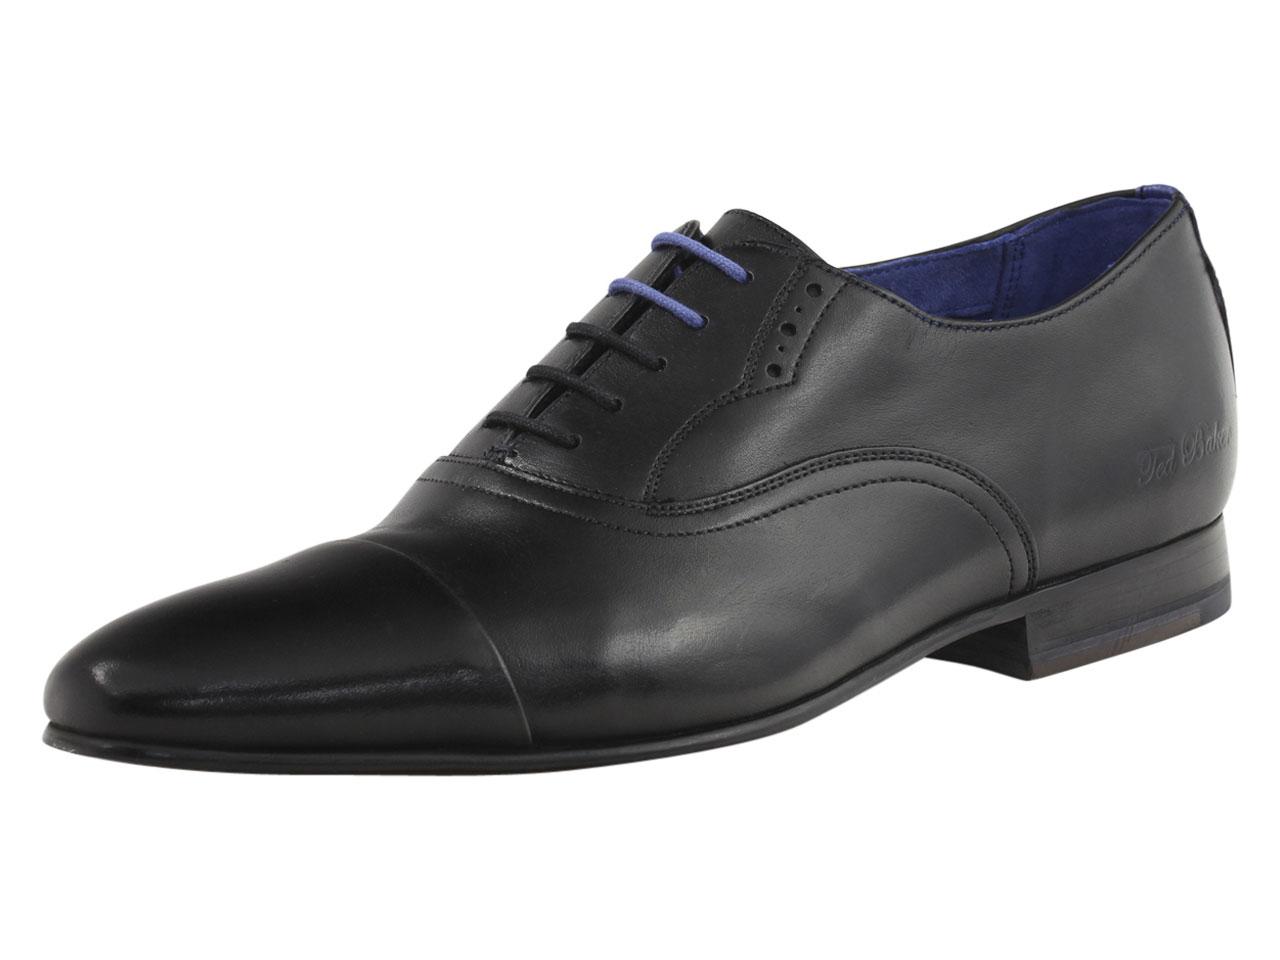 Ted Baker Men's Murain Fashion Oxfords Shoes - Black - 8.5 D(M) US